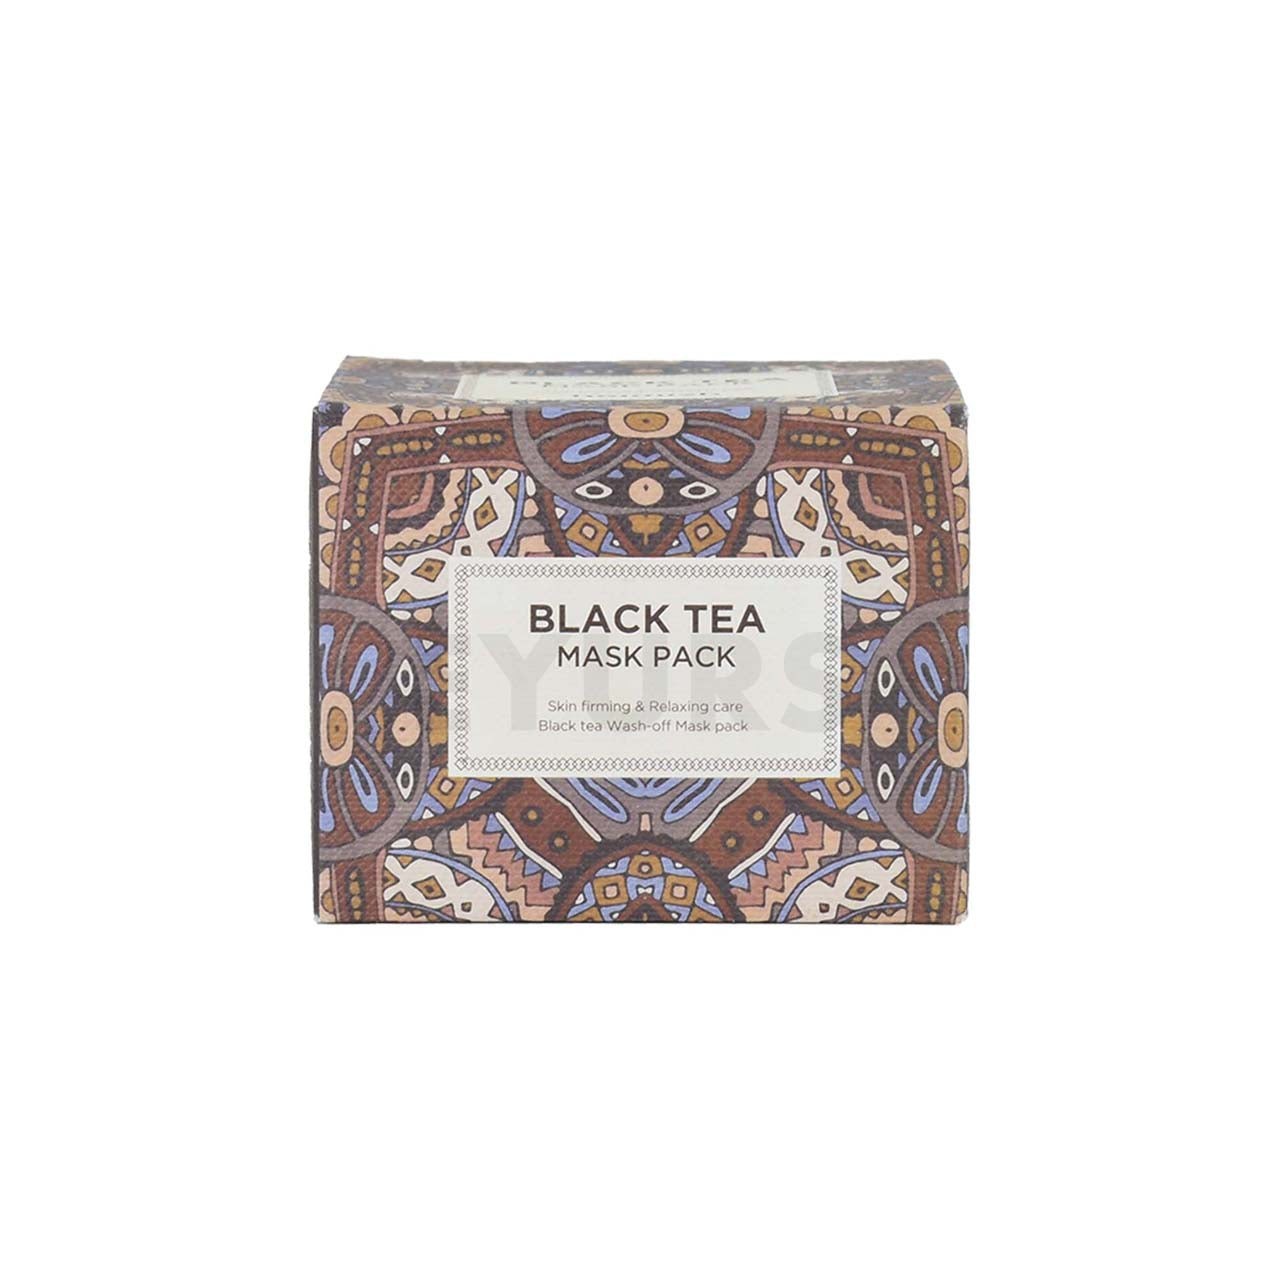 heimish black tea mask pack front side packaging